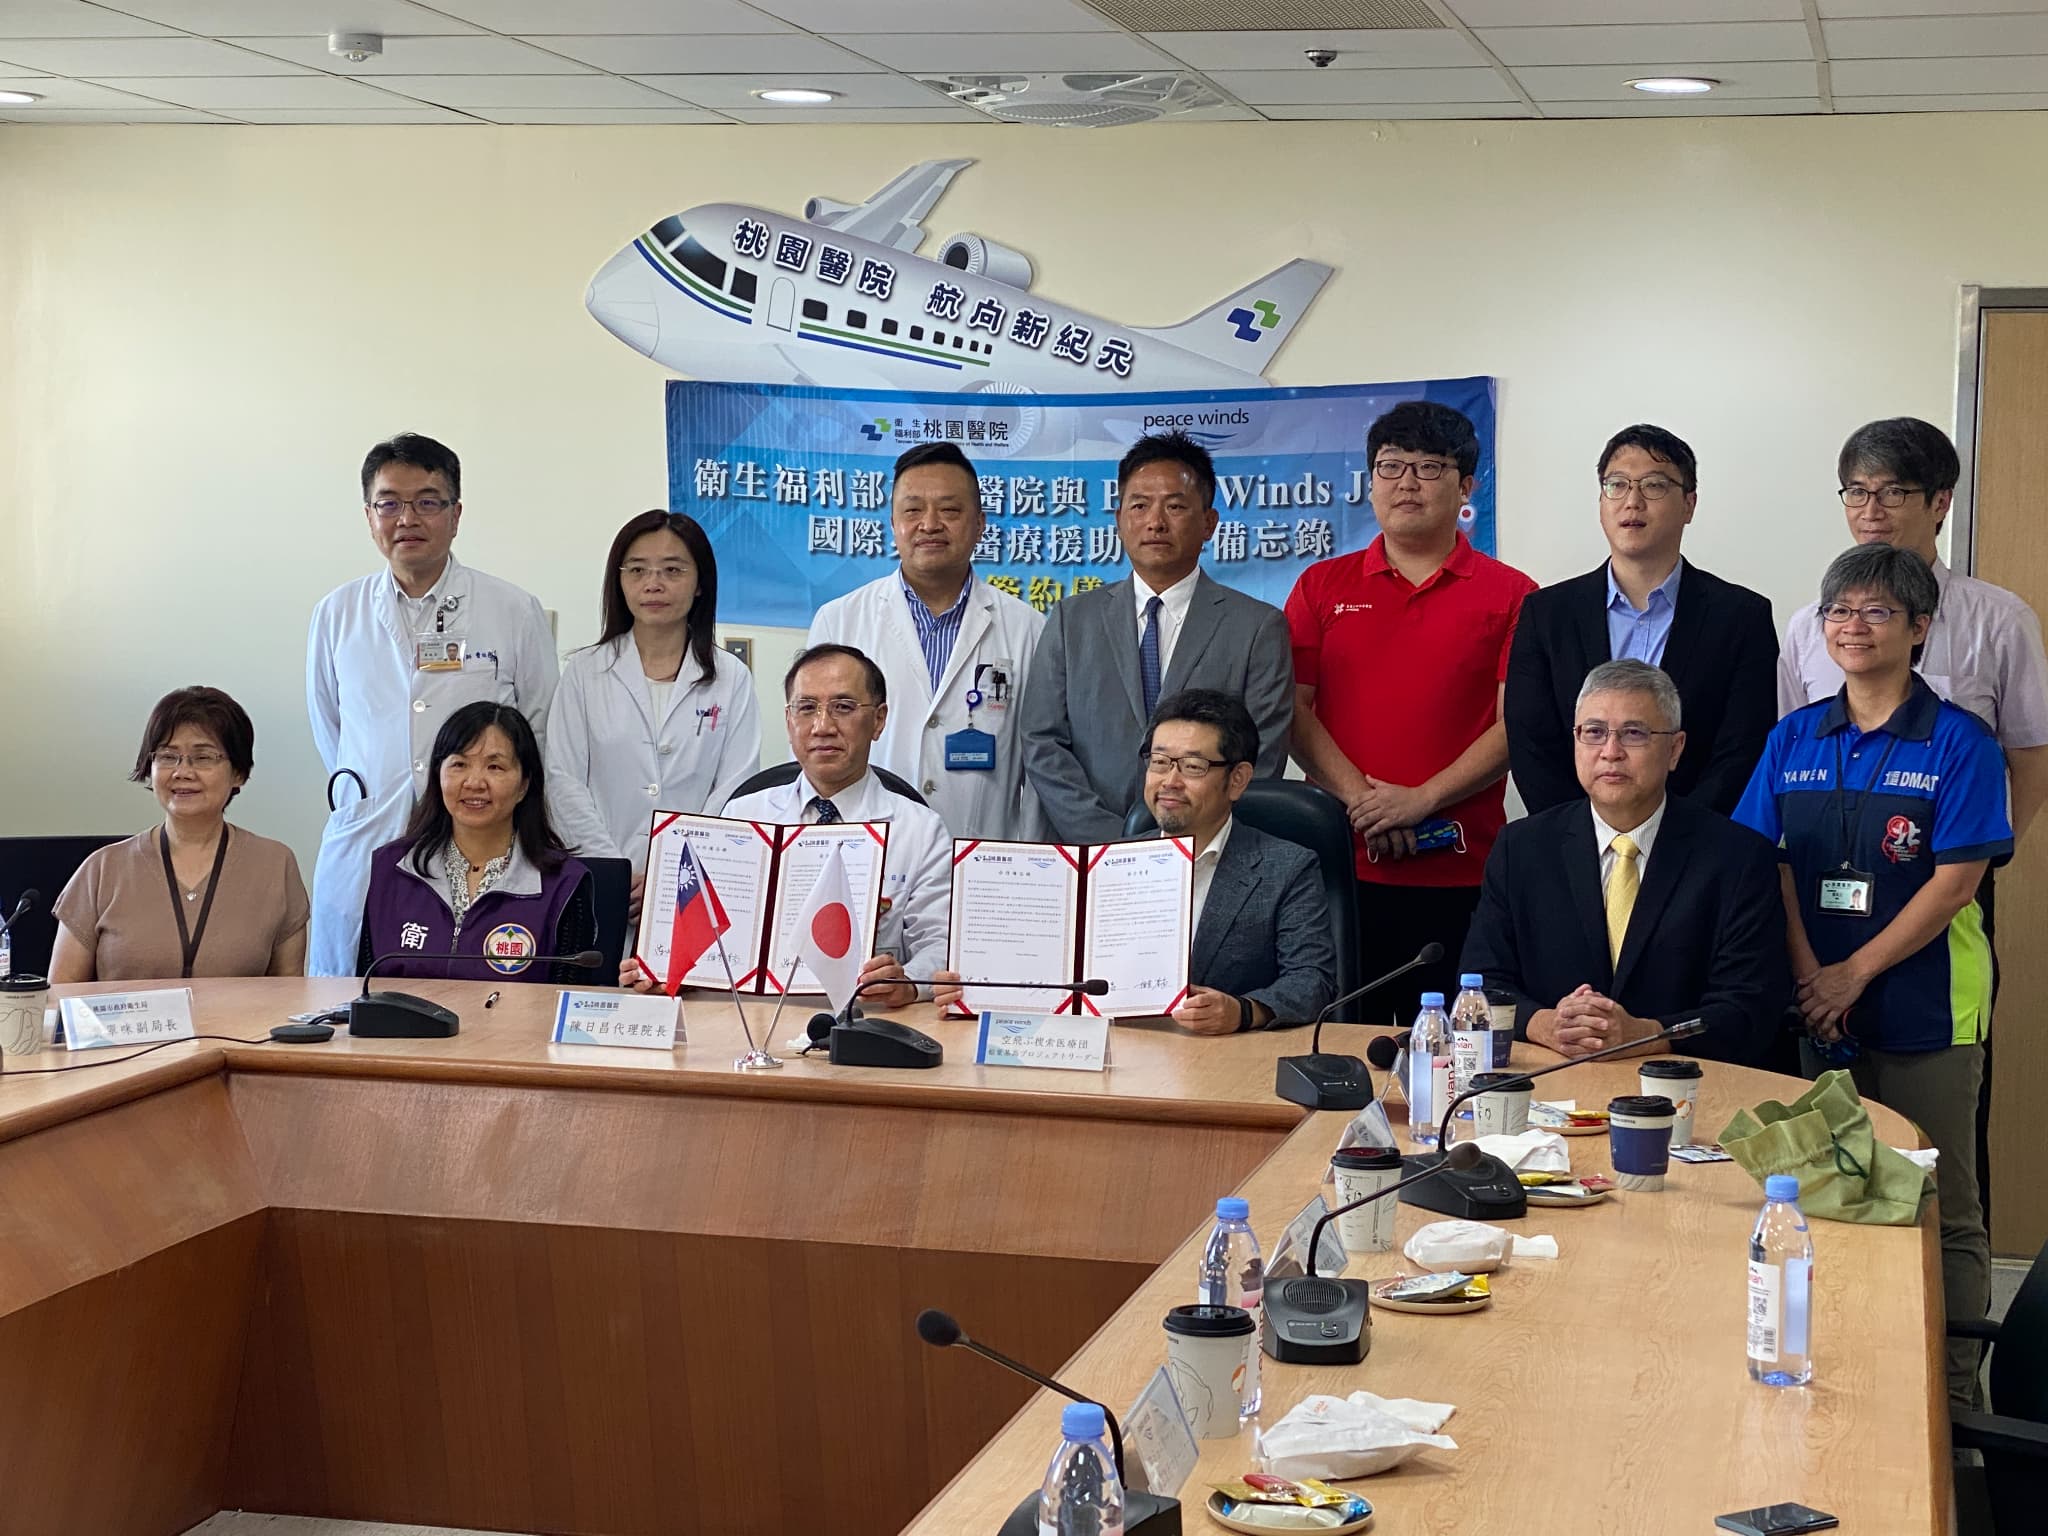 台湾にある衛生福利部桃園醫院と連携協力に関する協定を締結しました。